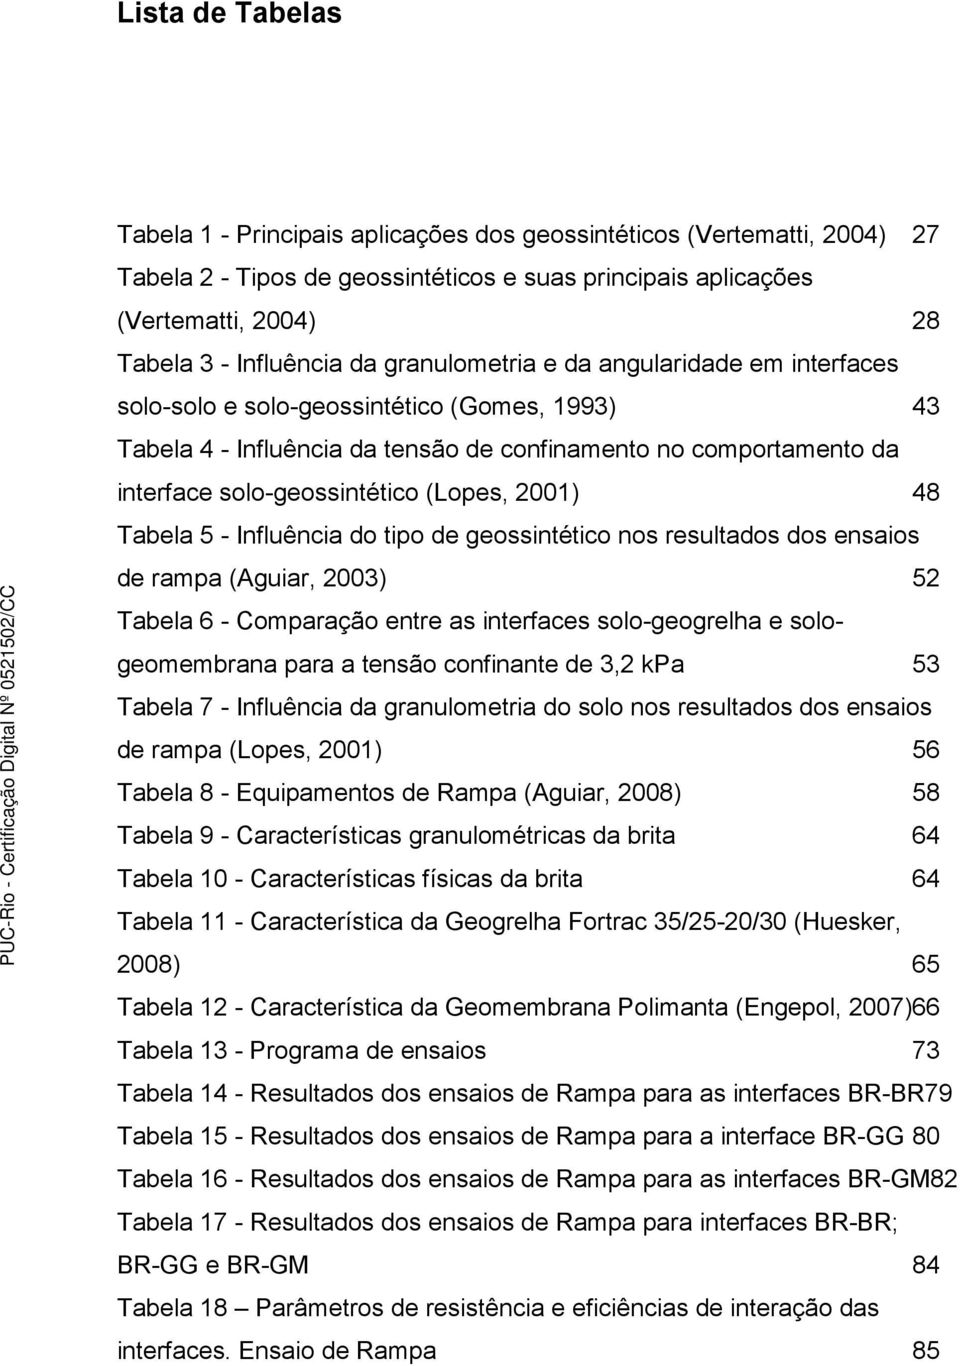 (Lopes, 2001) 48 Tabela 5 - Influência do tipo de geossintético nos resultados dos ensaios de rampa (Aguiar, 2003) 52 Tabela 6 - Comparação entre as interfaces solo-geogrelha e sologeomembrana para a